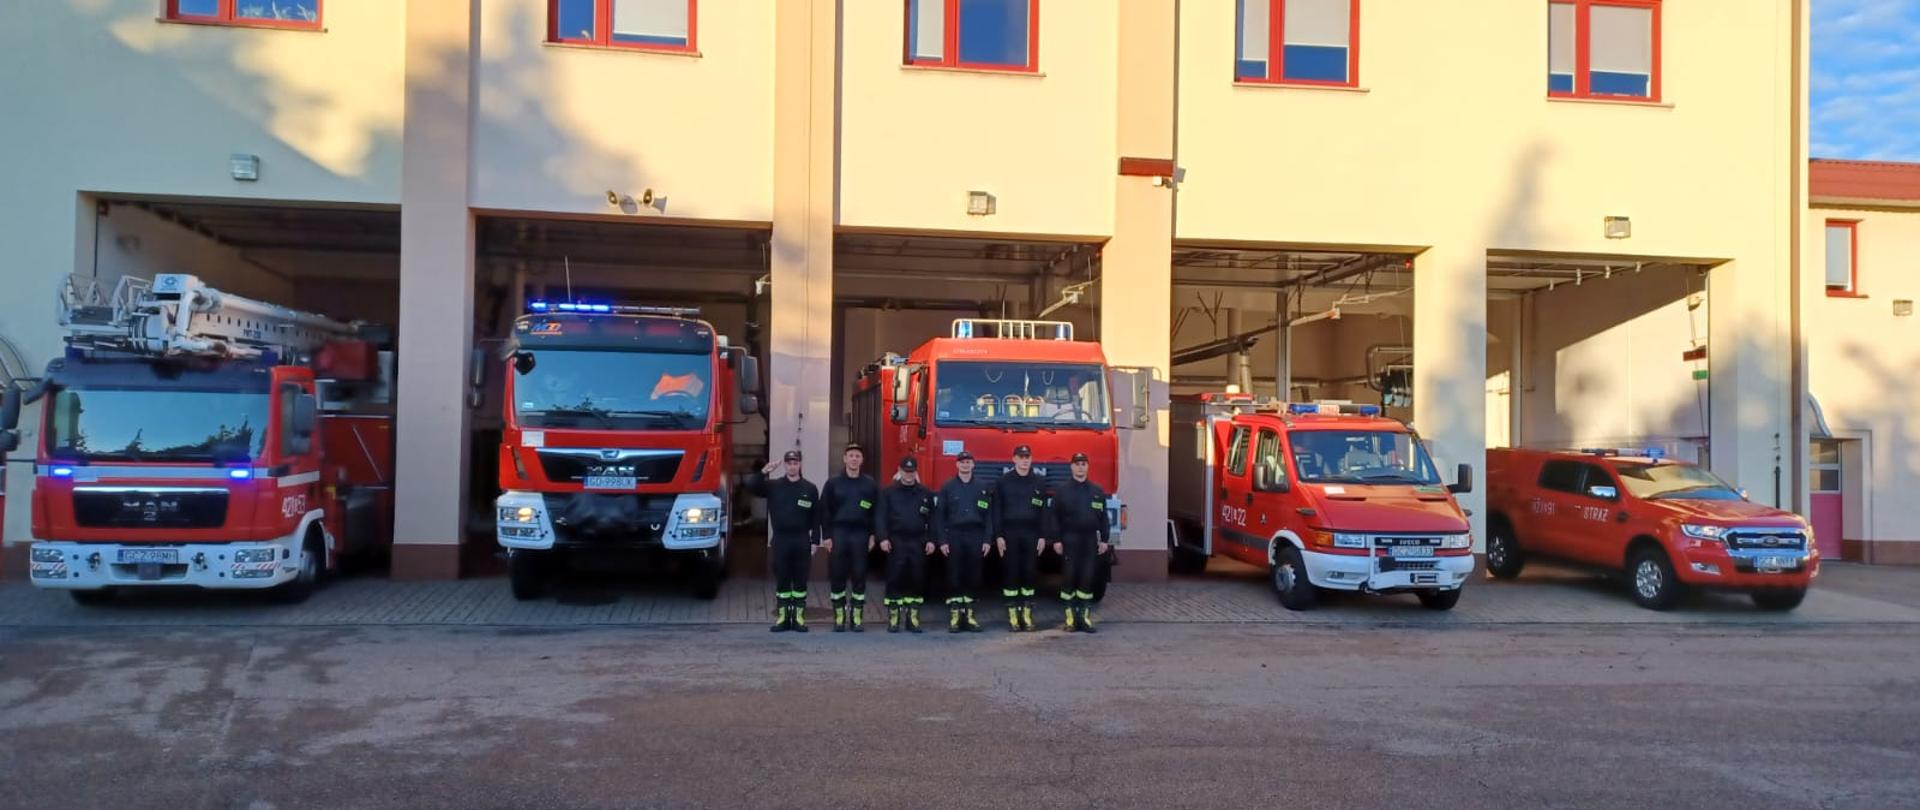 Przed garażem stoją pojazdy strażackie z włączonymi sygnałami dźwiękowymi i świetlnymi. Przed samochodami stoi sześciu strażaków, jeden salutuje.